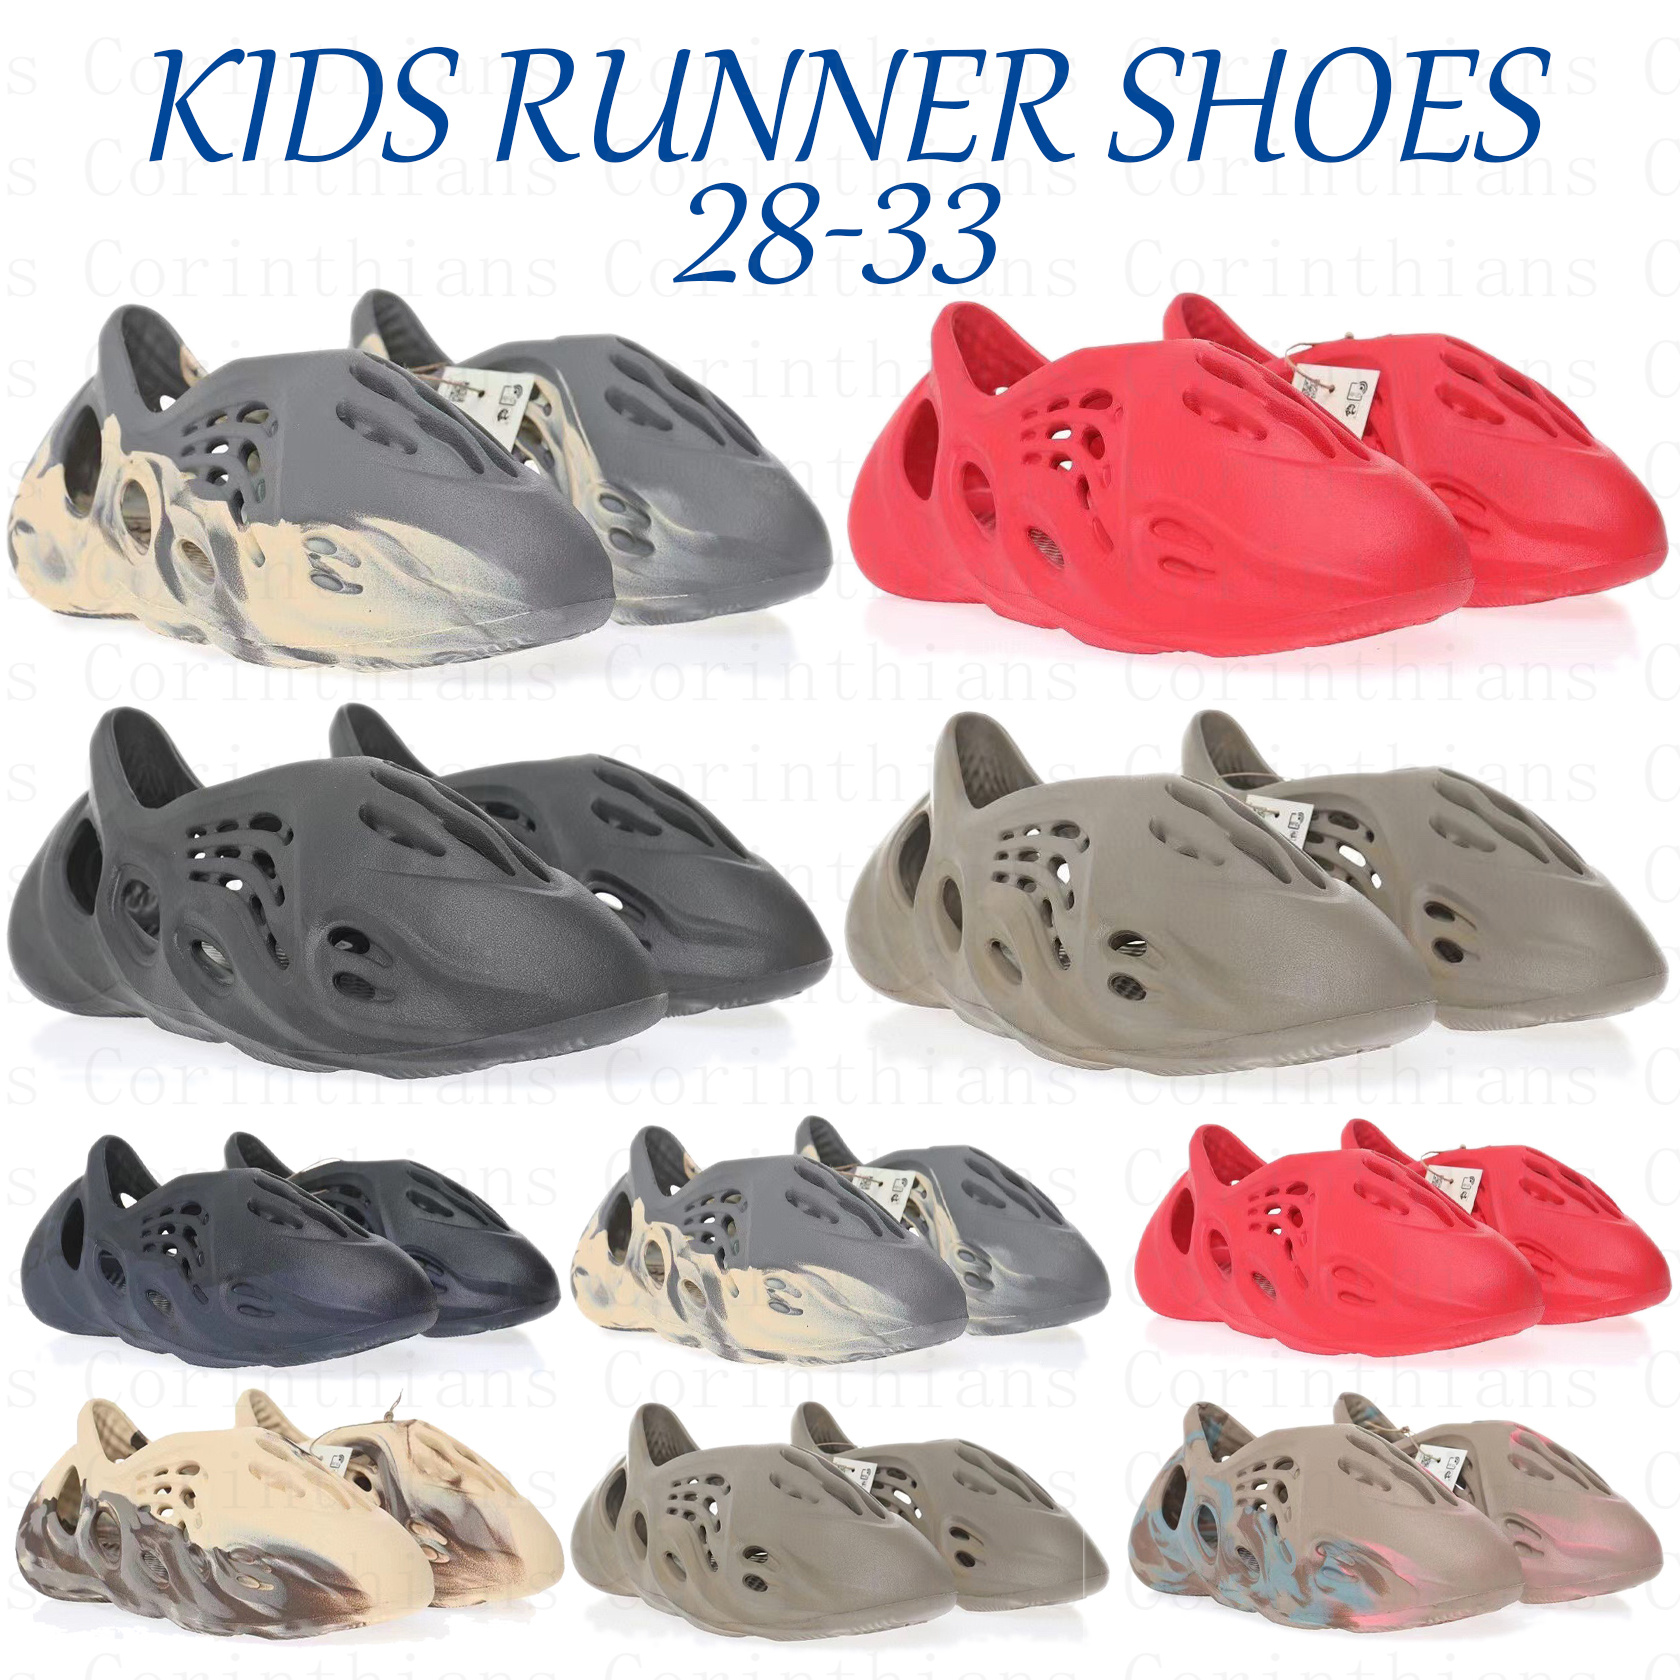 Designer kids Toddlers foam summer sandals runner slippers trainers kid boys girls Slides Sandal Black White Pure Ochre Orange Bone Resin Infants Baby Sneaker Shoe